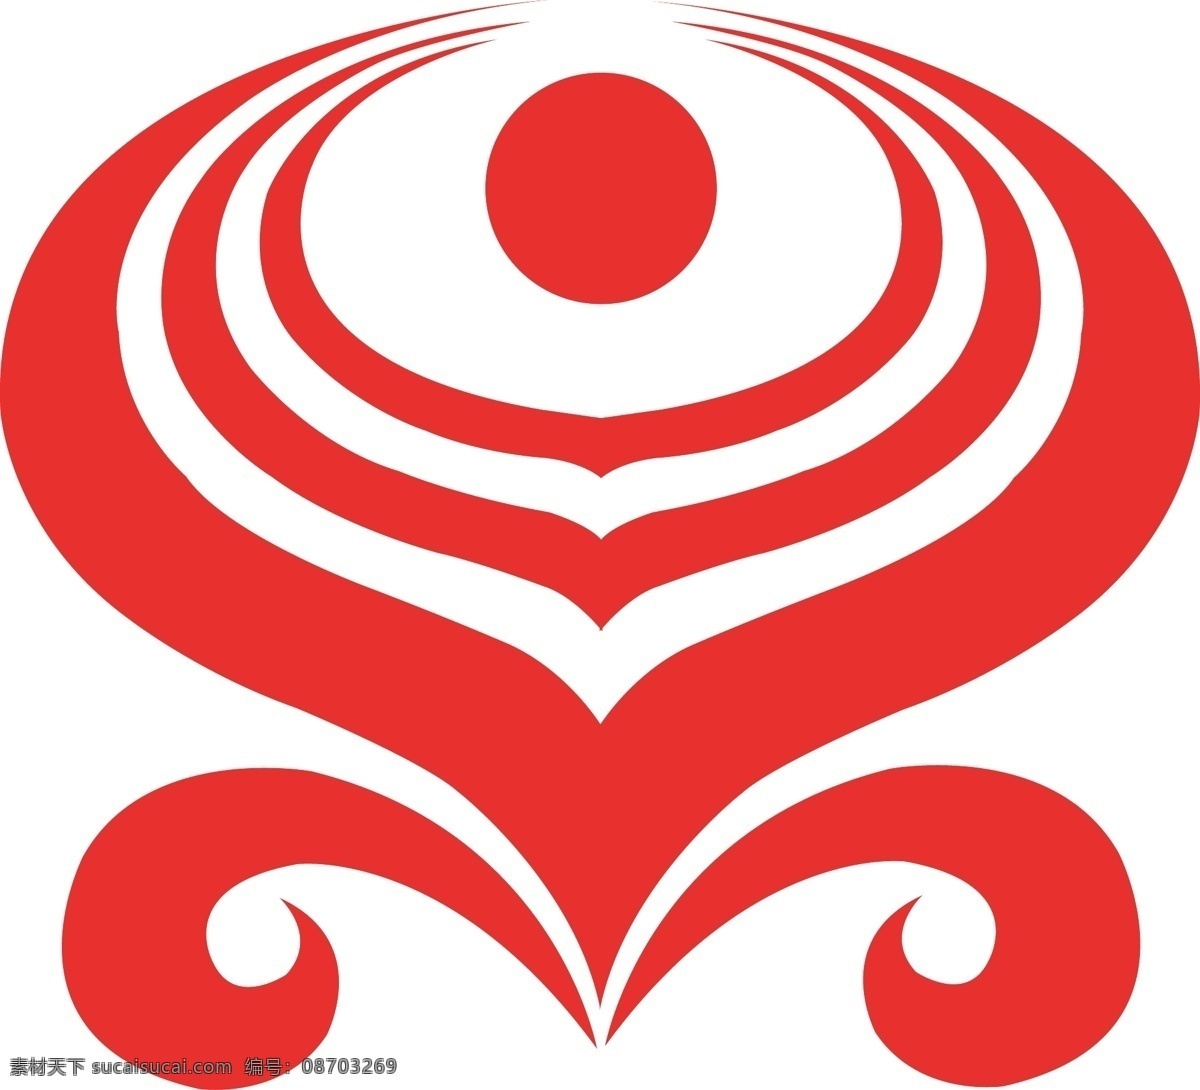 海南航空 矢量logo 矢量 logo 企业 标志 标识标志图标